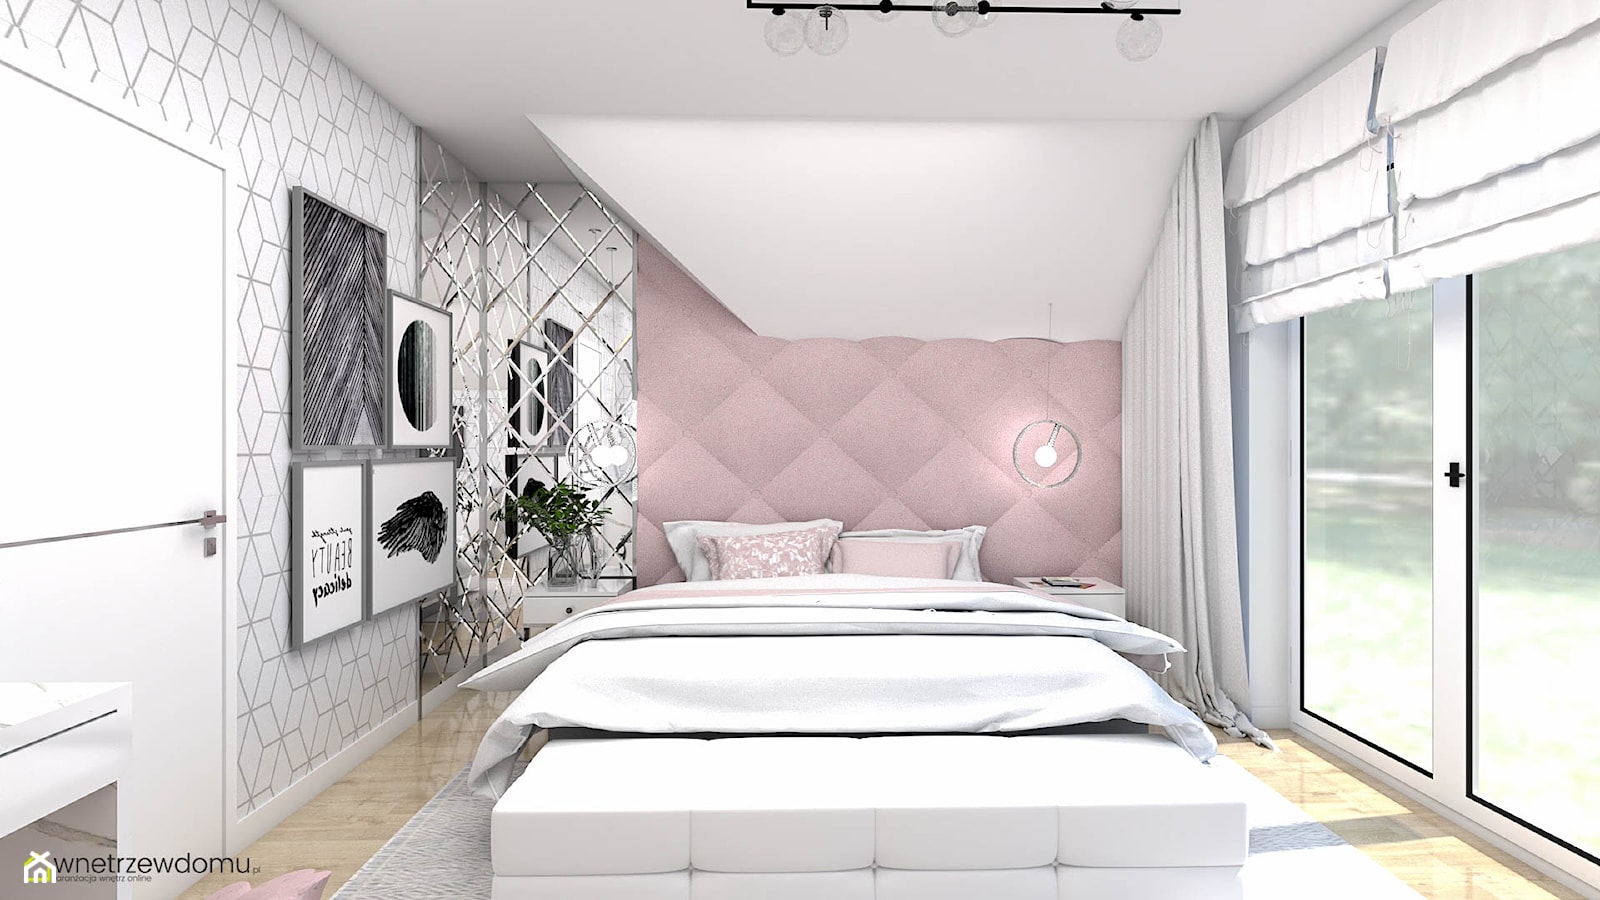 Kobieca sypialnia - nowoczesność i glamour - zdjęcie od wnetrzewdomu - Homebook